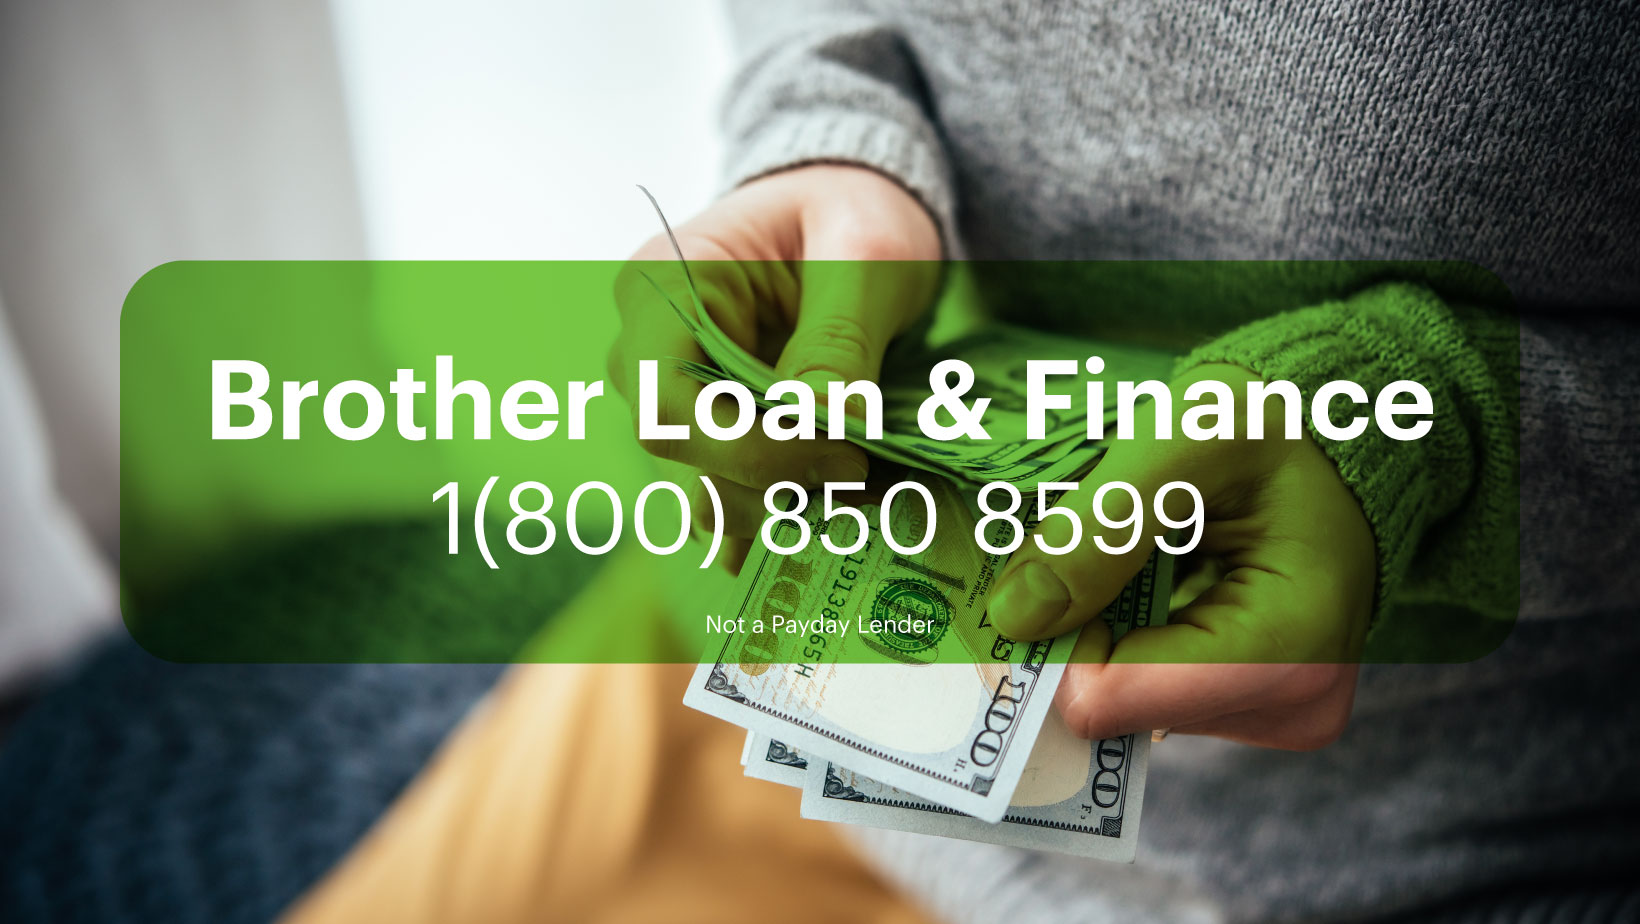 Brother Loan & Finance 7621 63rd St, Summit Illinois 60501